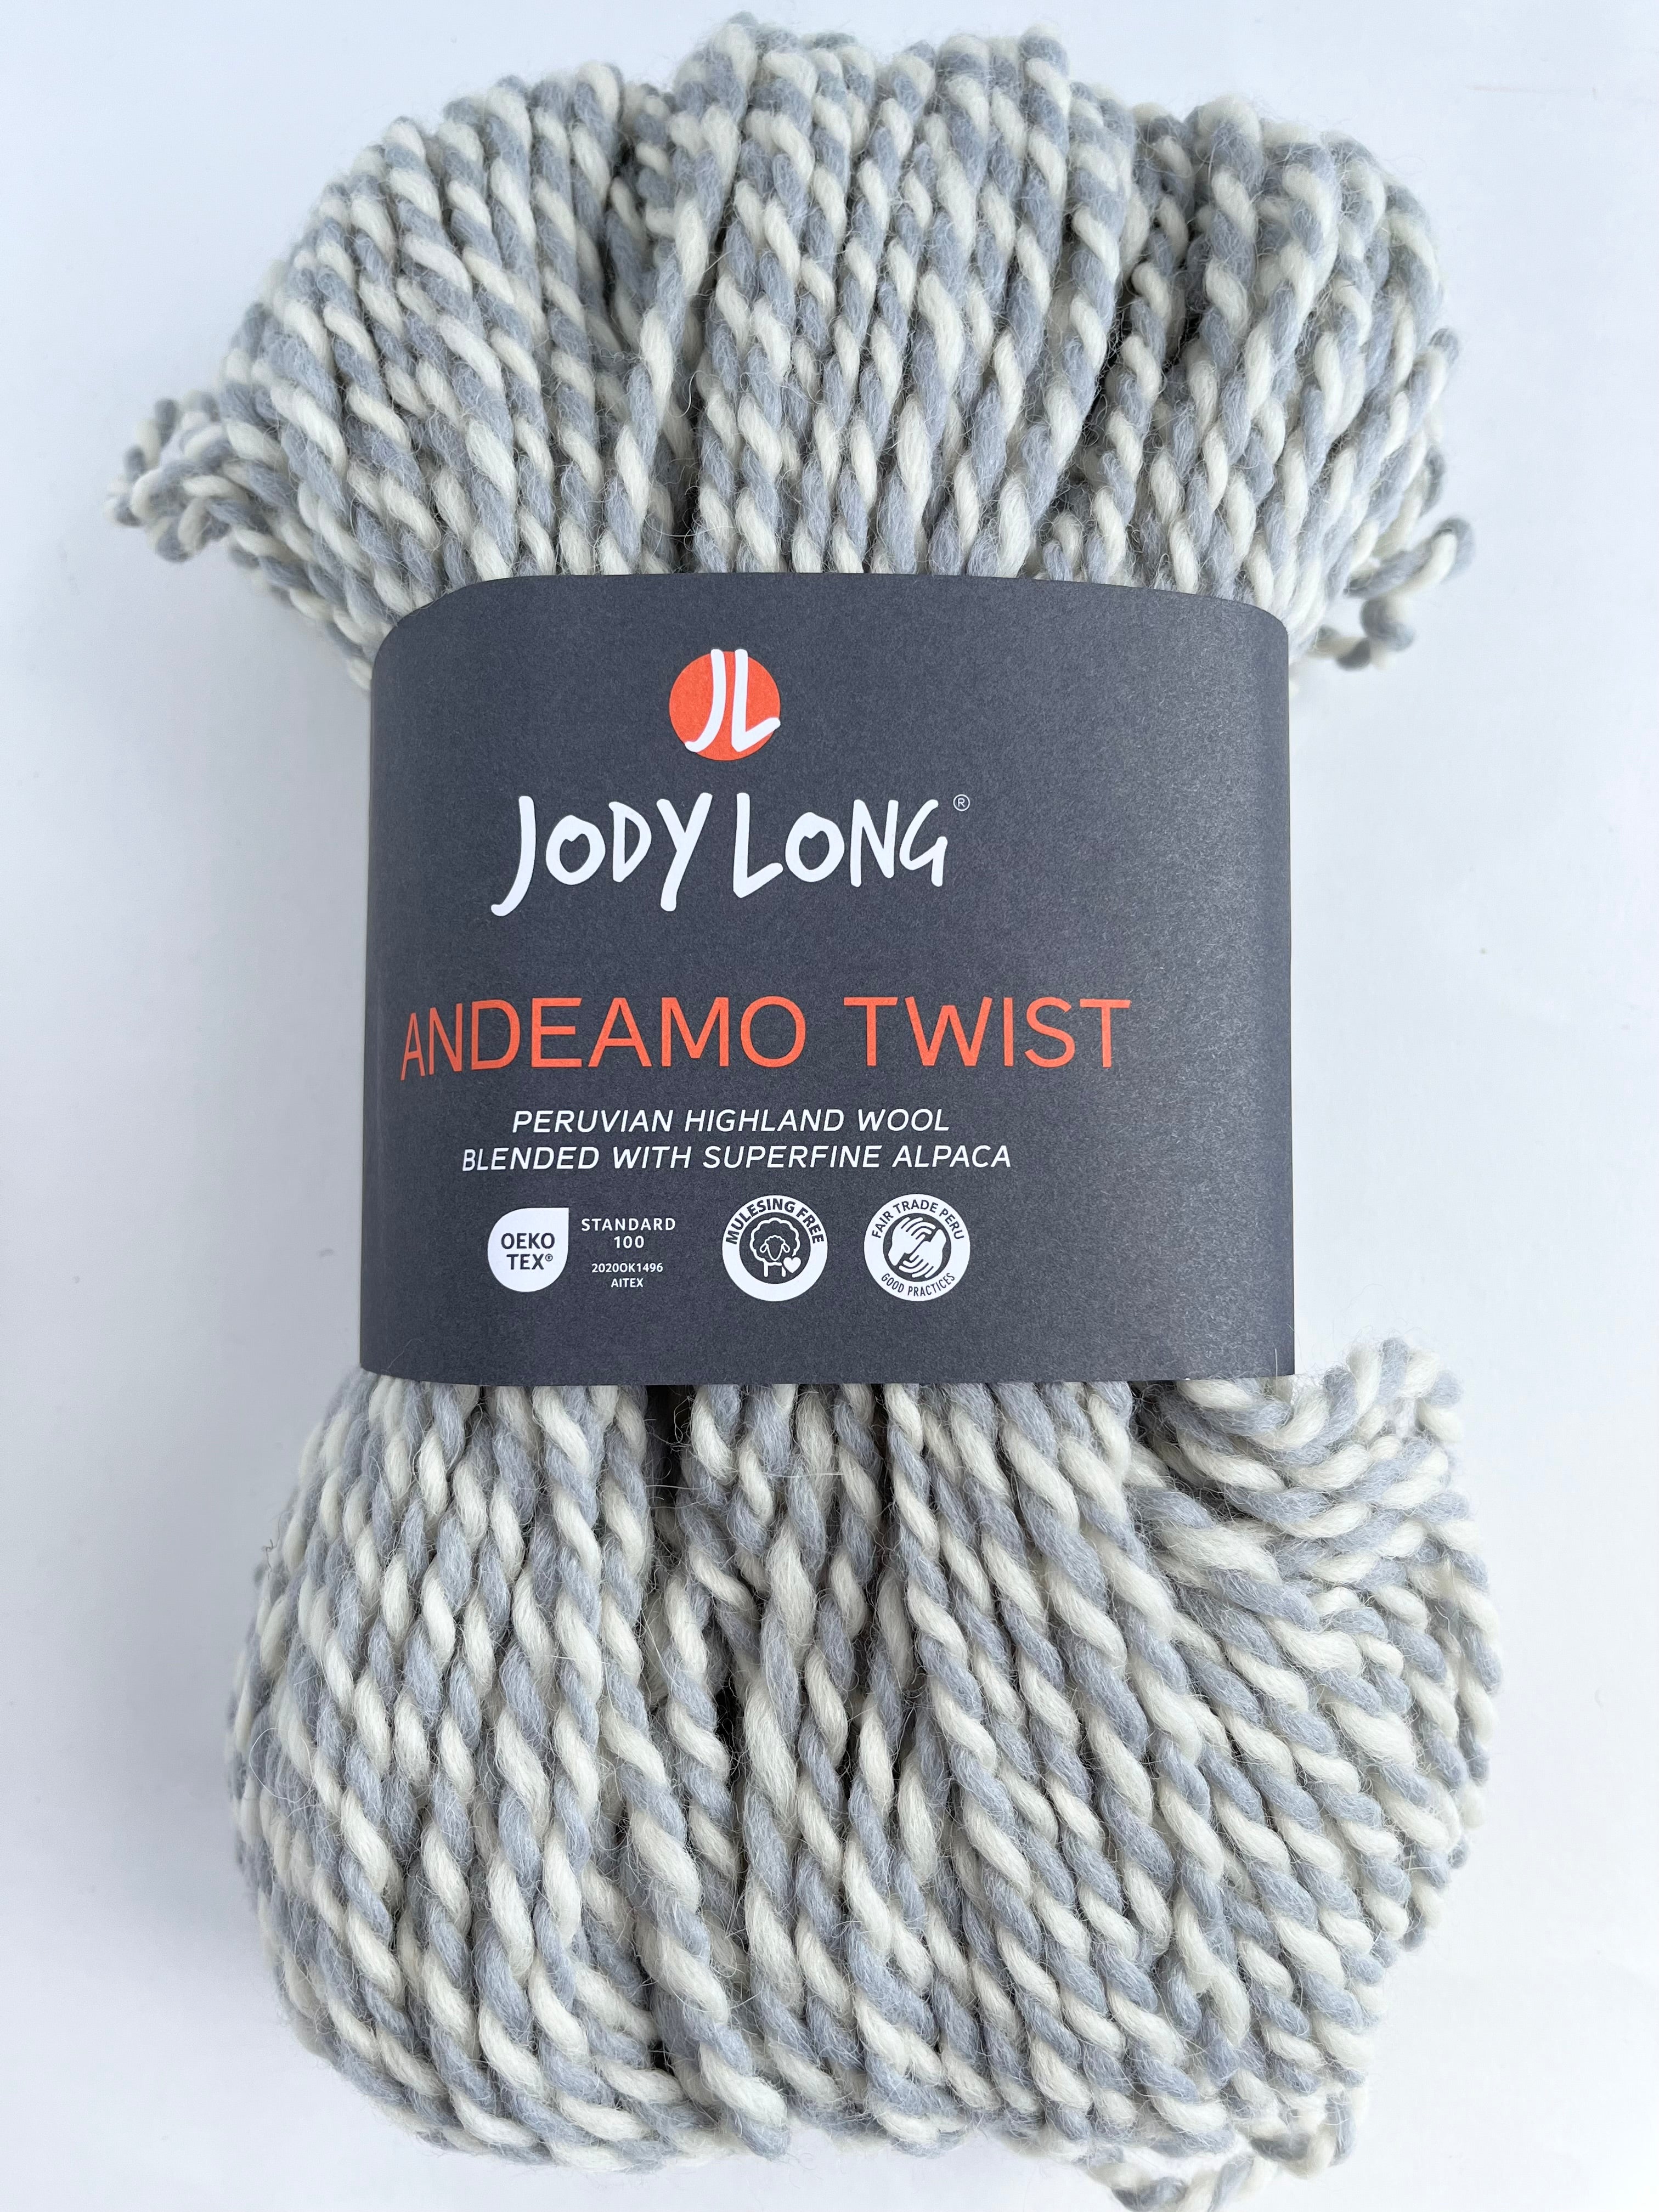 Andeamo Twist yarn by Jody Long